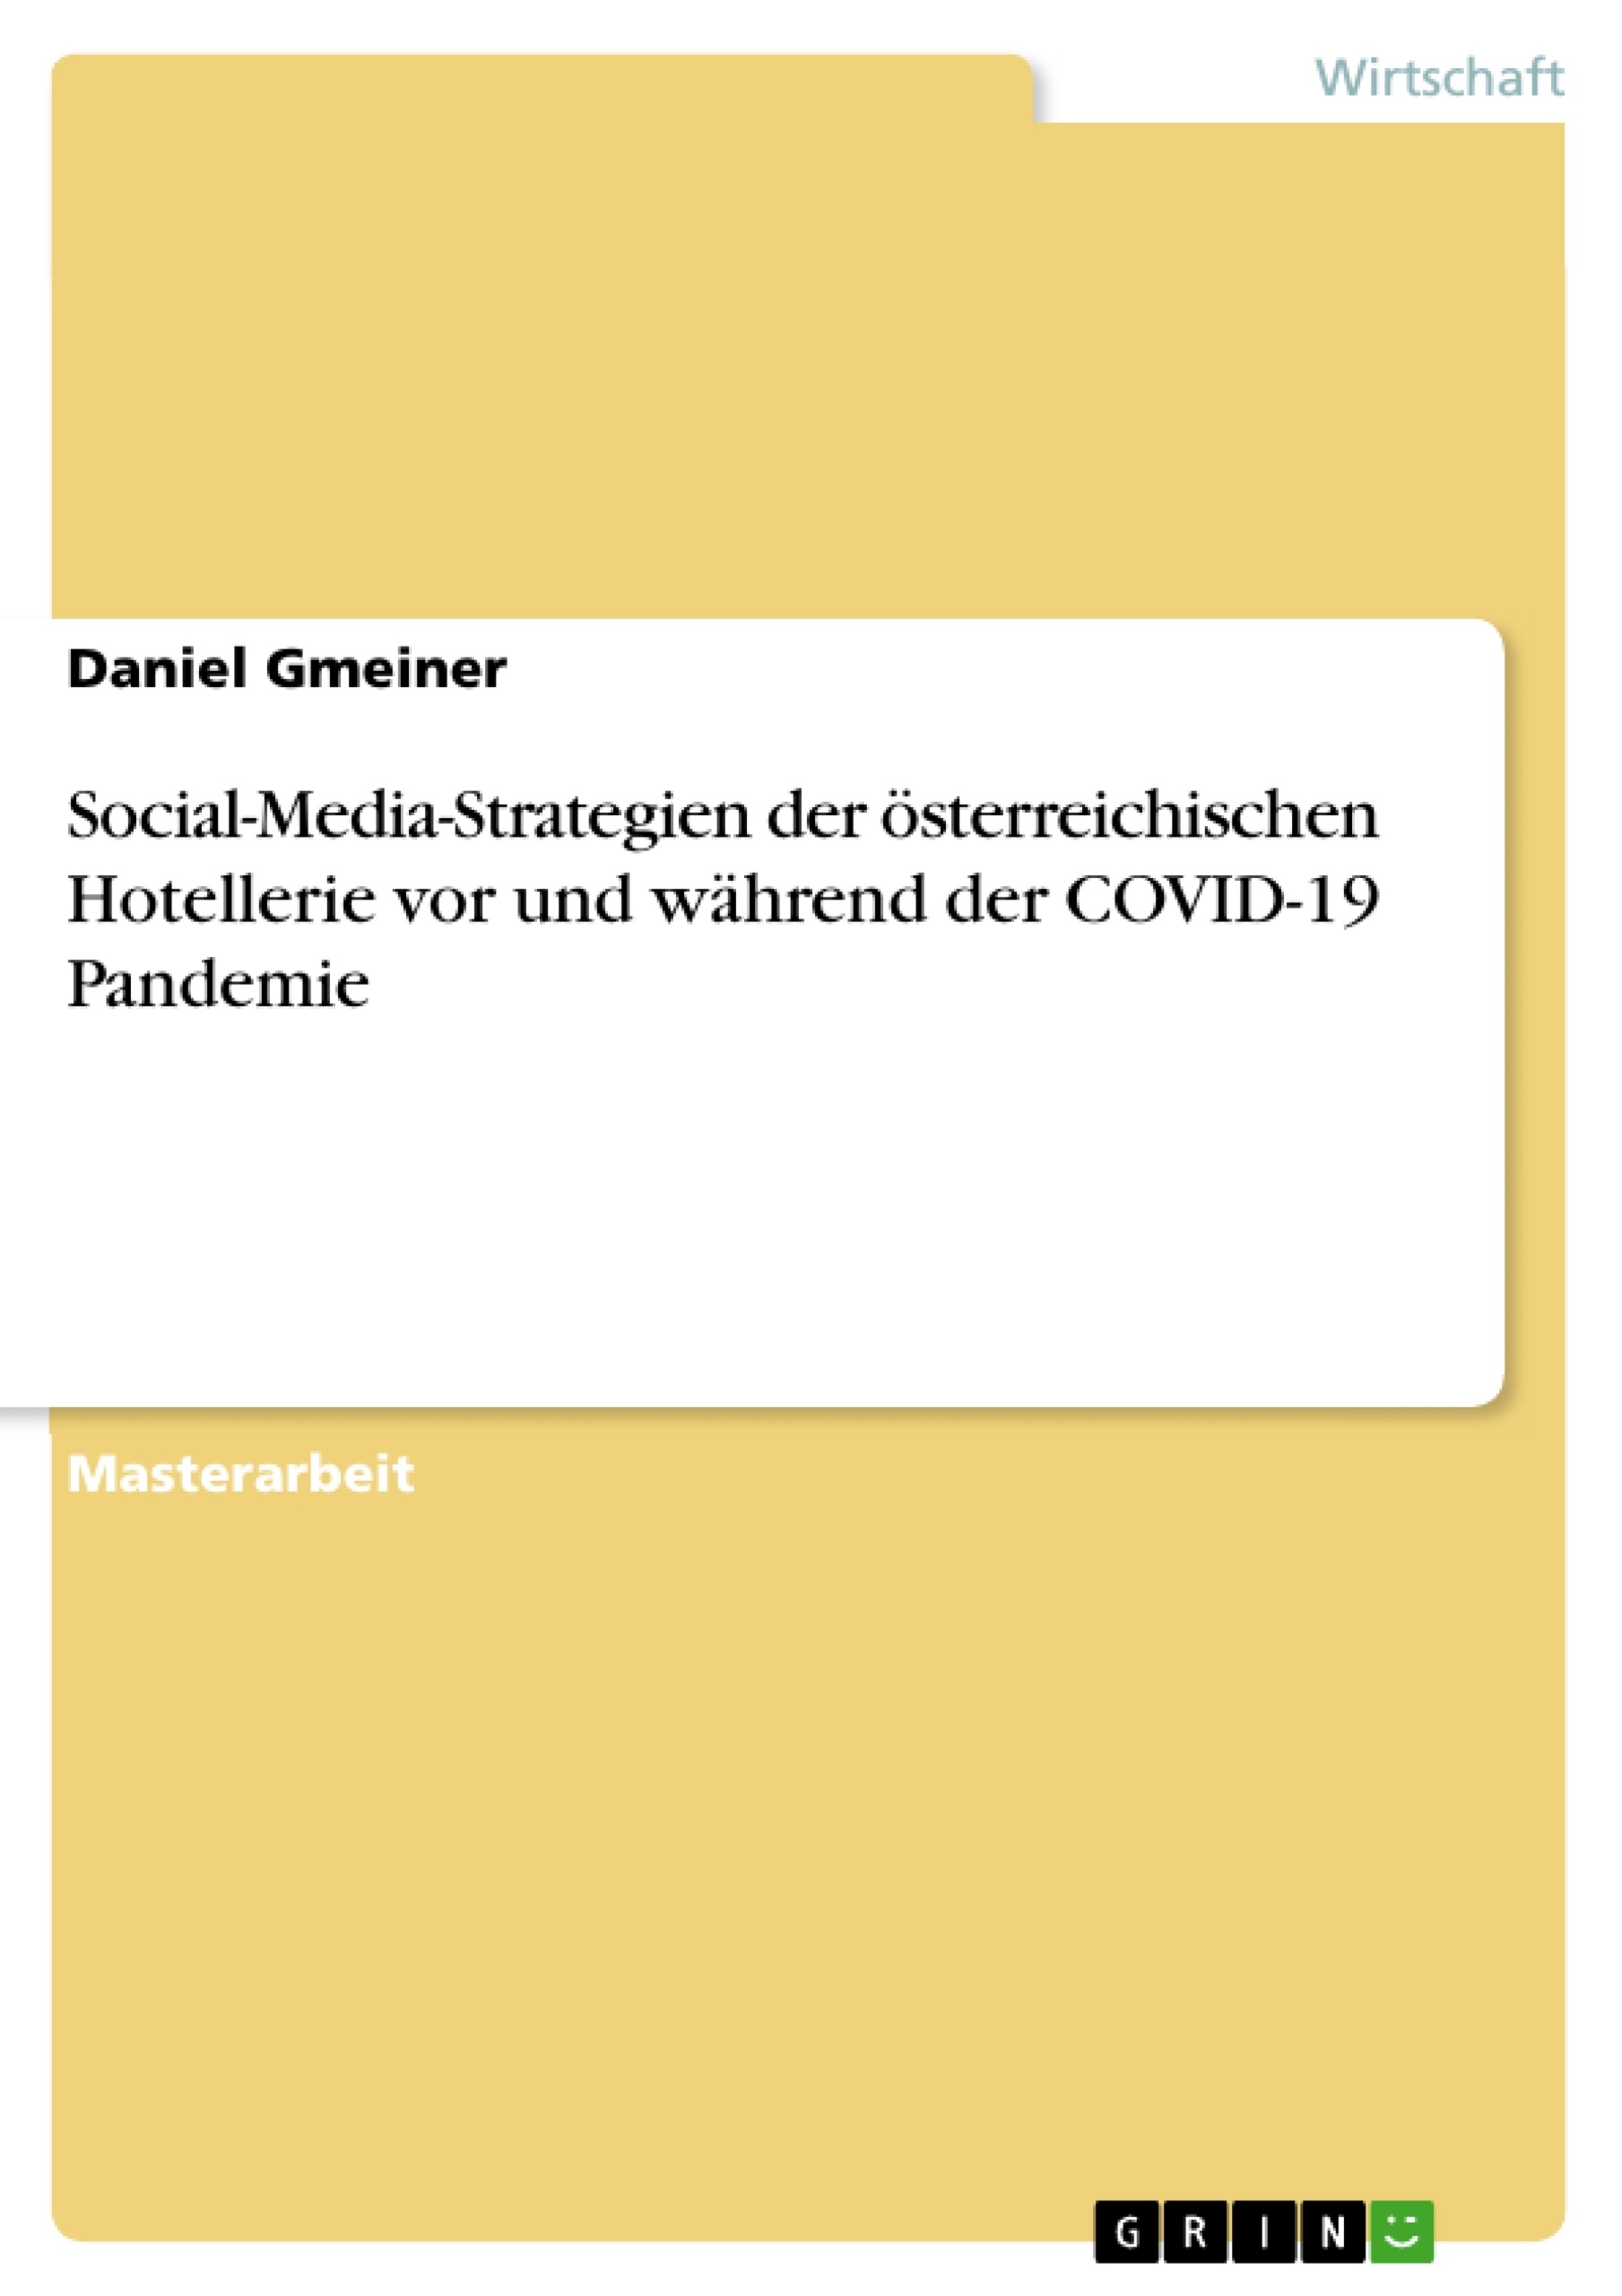 Title: Social-Media-Strategien der österreichischen Hotellerie vor und während der COVID-19 Pandemie